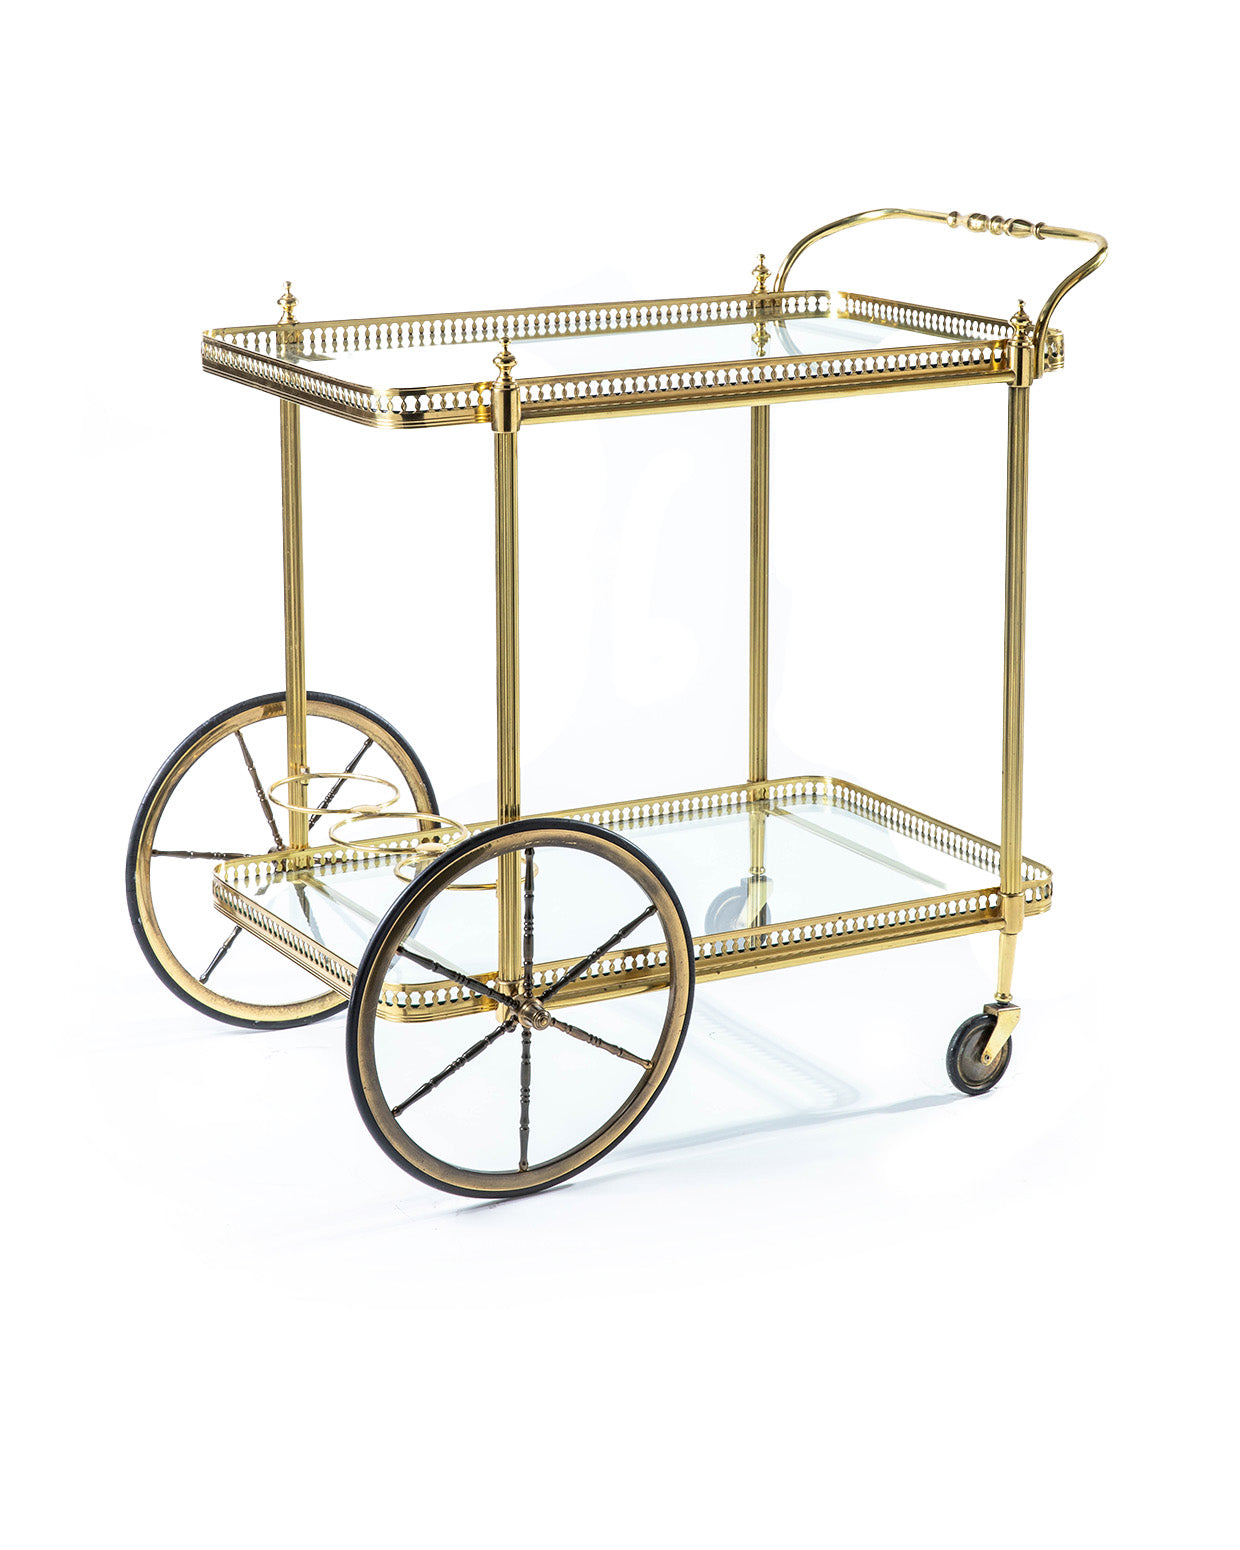 Gold brass Bar Cart with Coach wheels - 1950